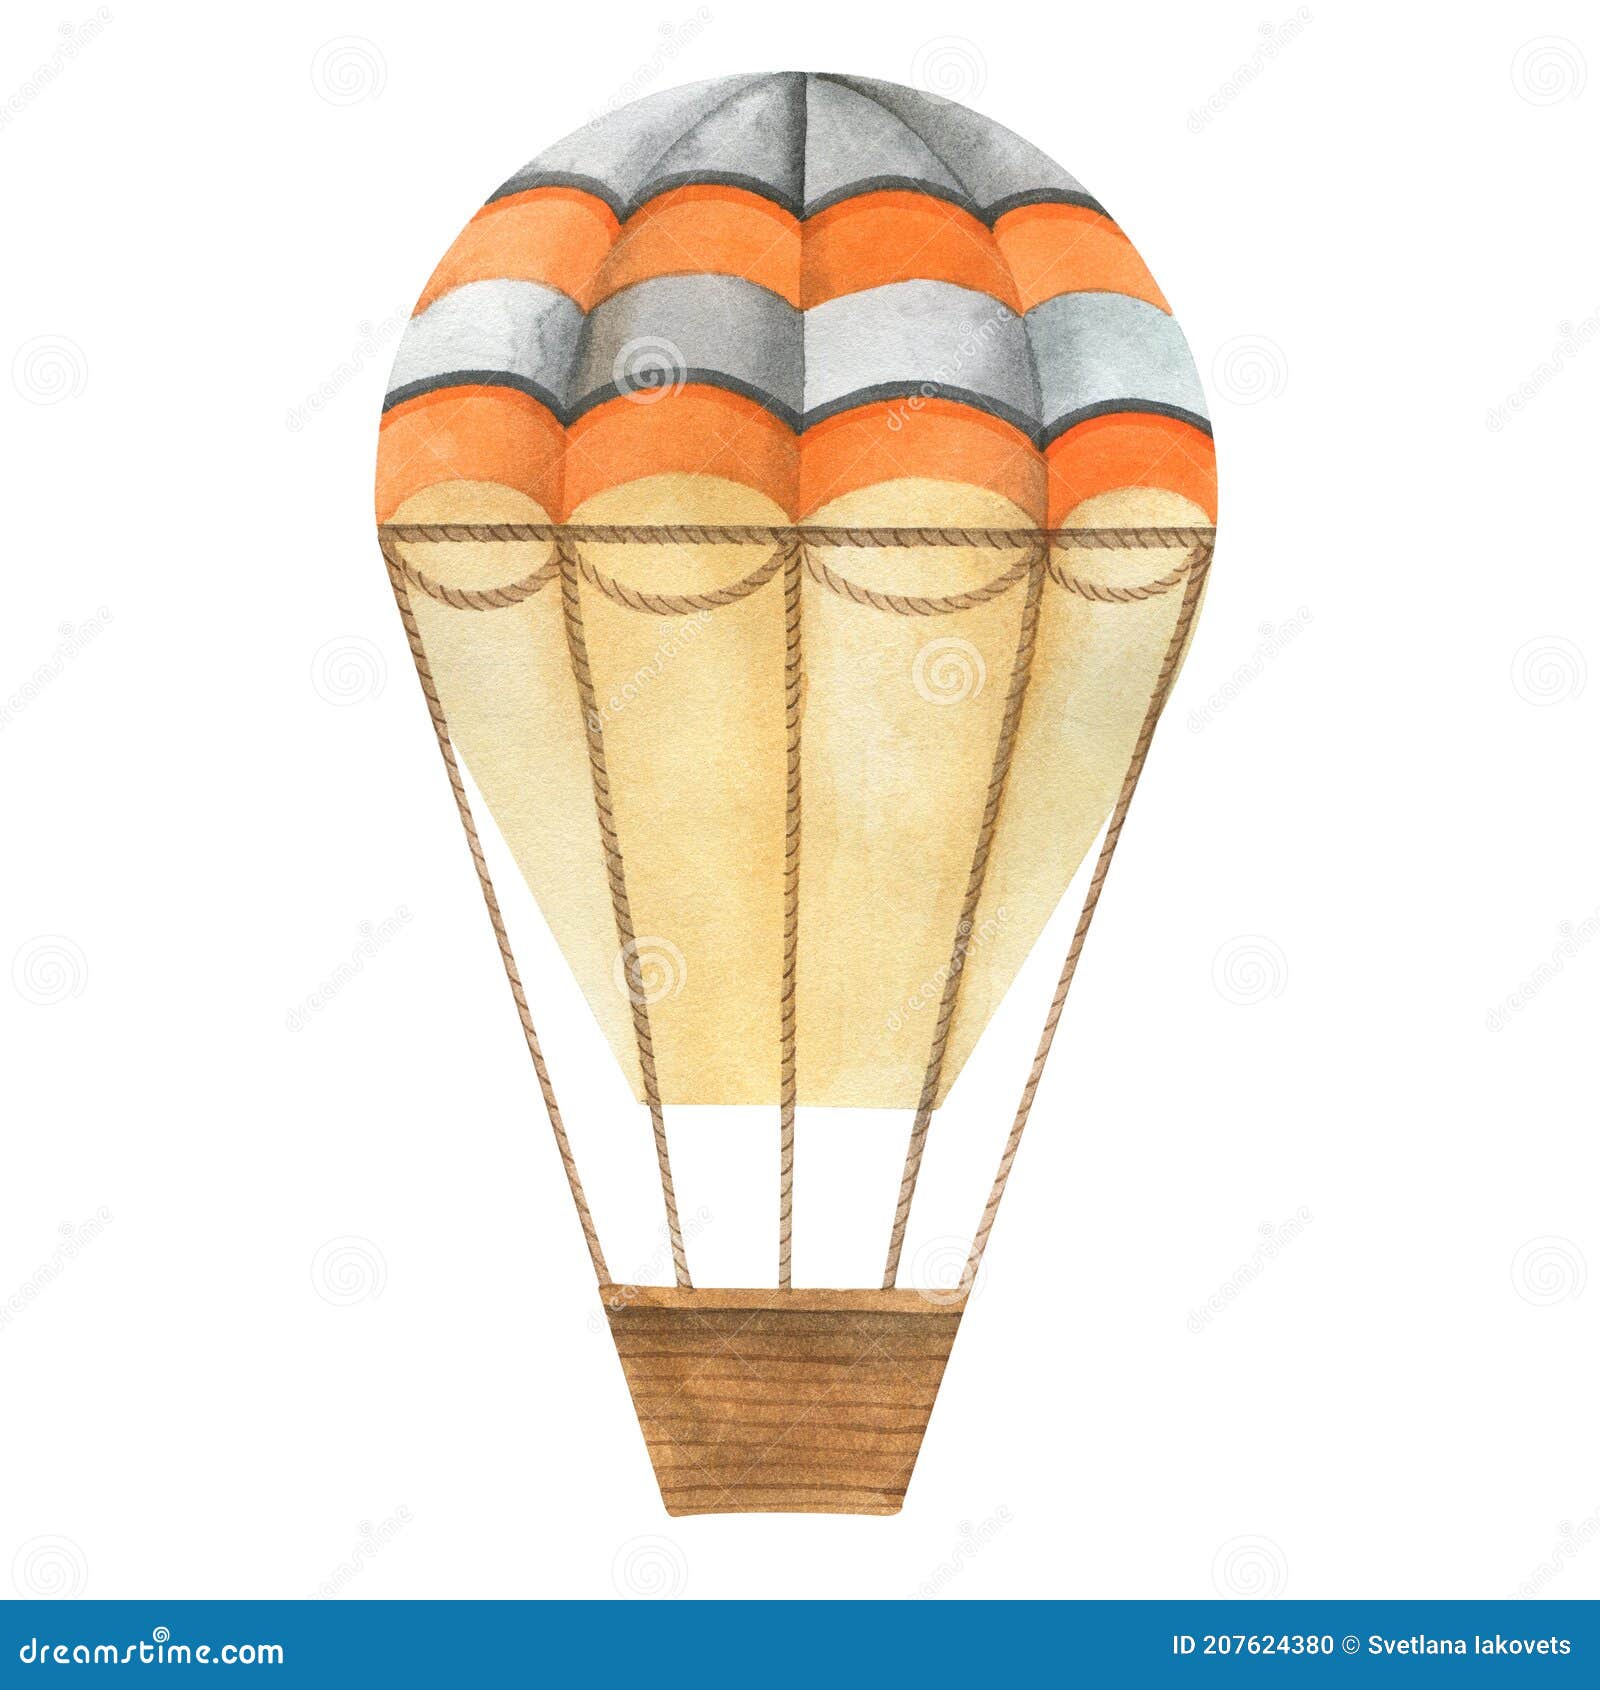 ballon volant avec panier dans le ciel avec des nuages 14047607 Art  vectoriel chez Vecteezy